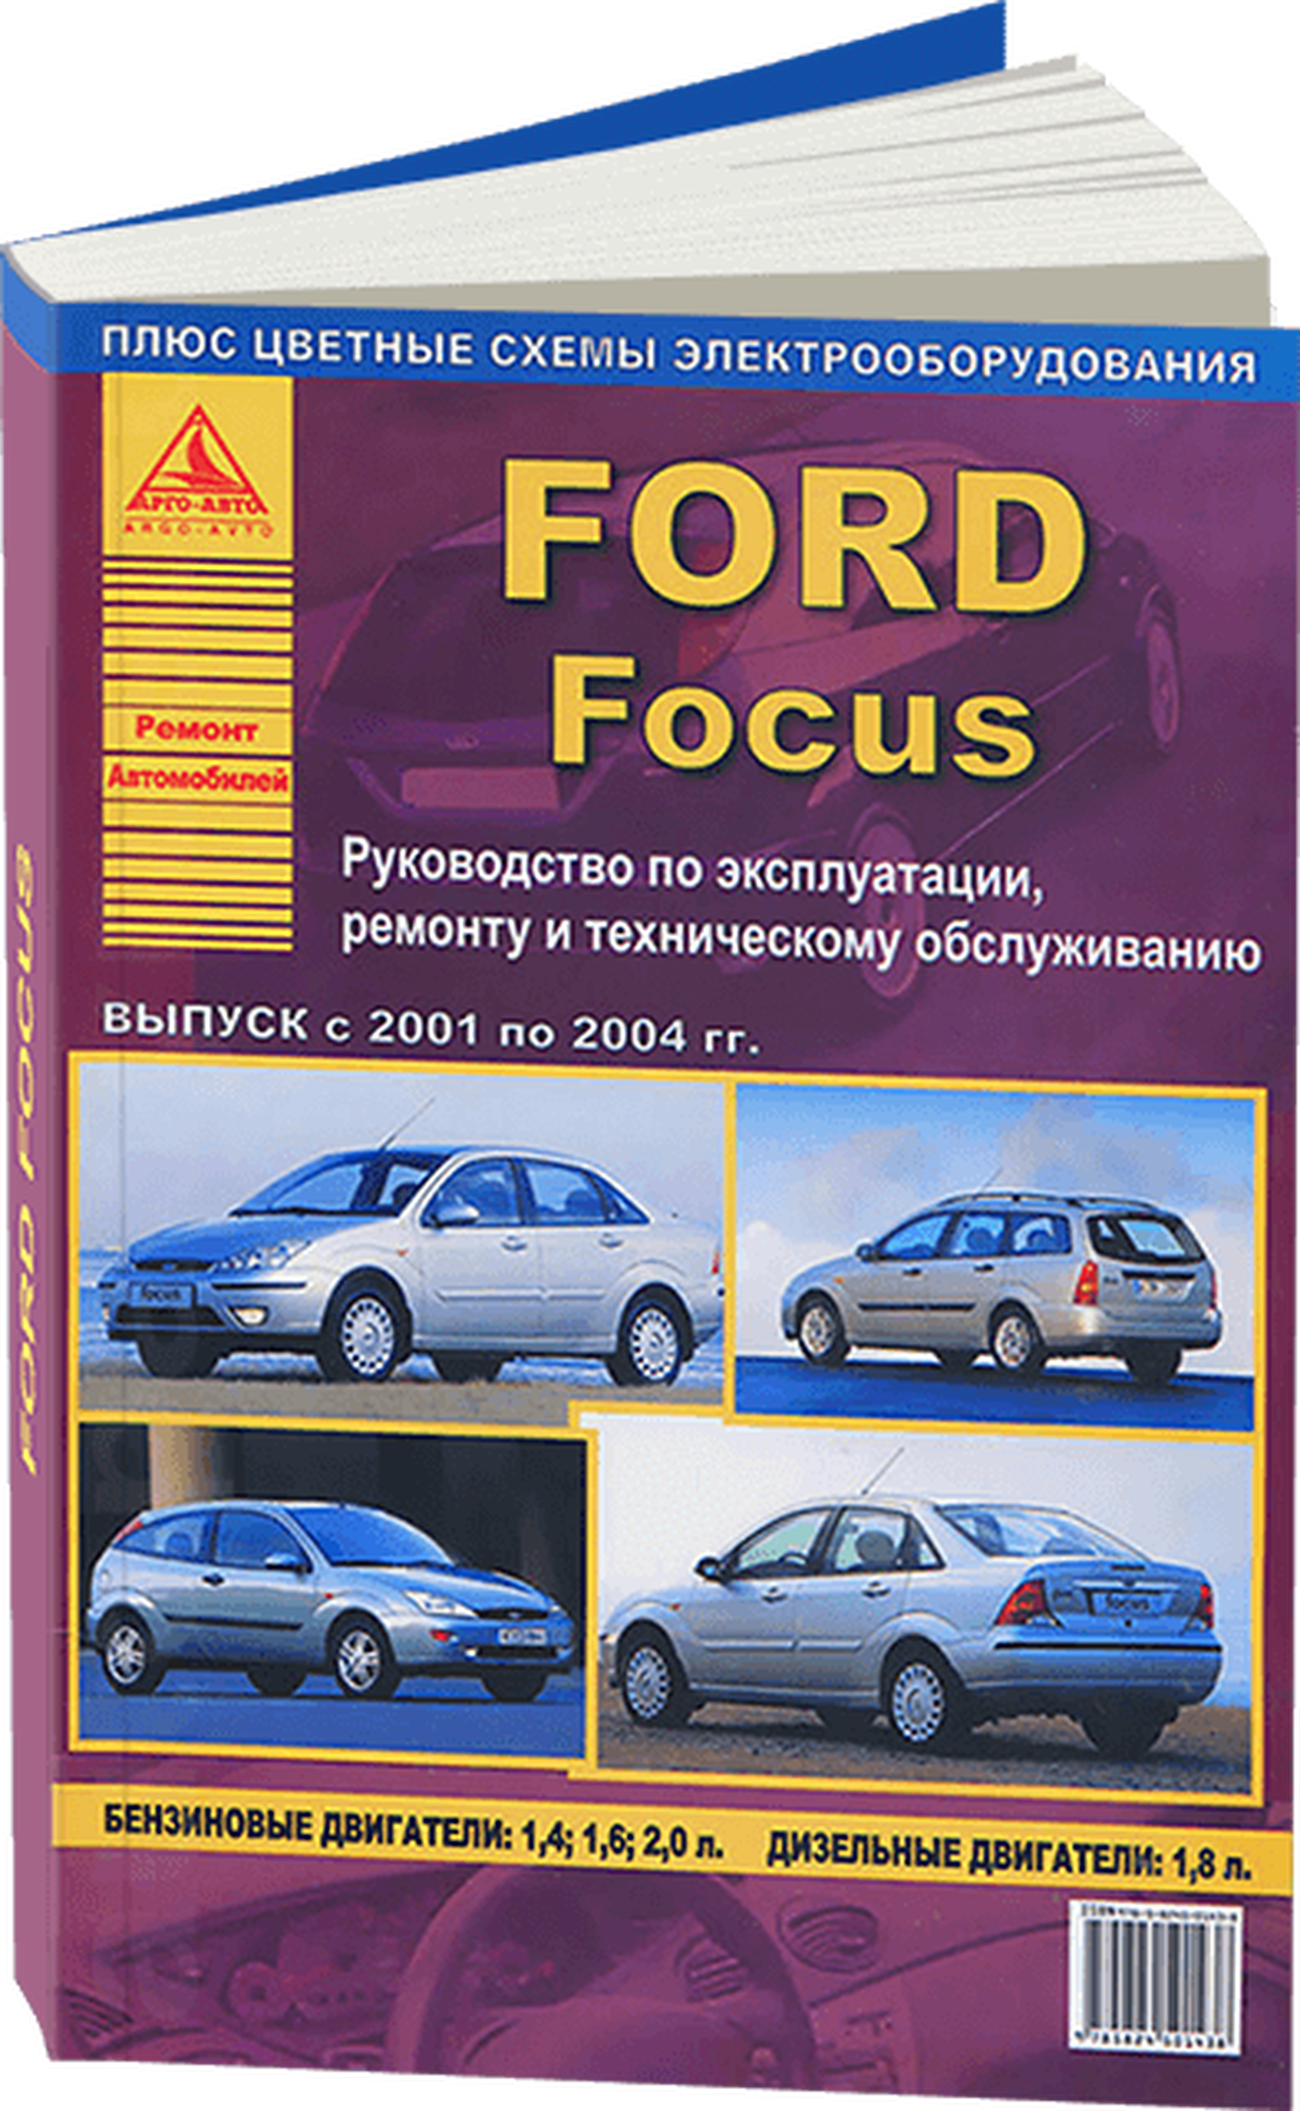 Книга: FORD FOCUS (б) 2001-2004 г.в., рем., экспл., то | Арго-Авто